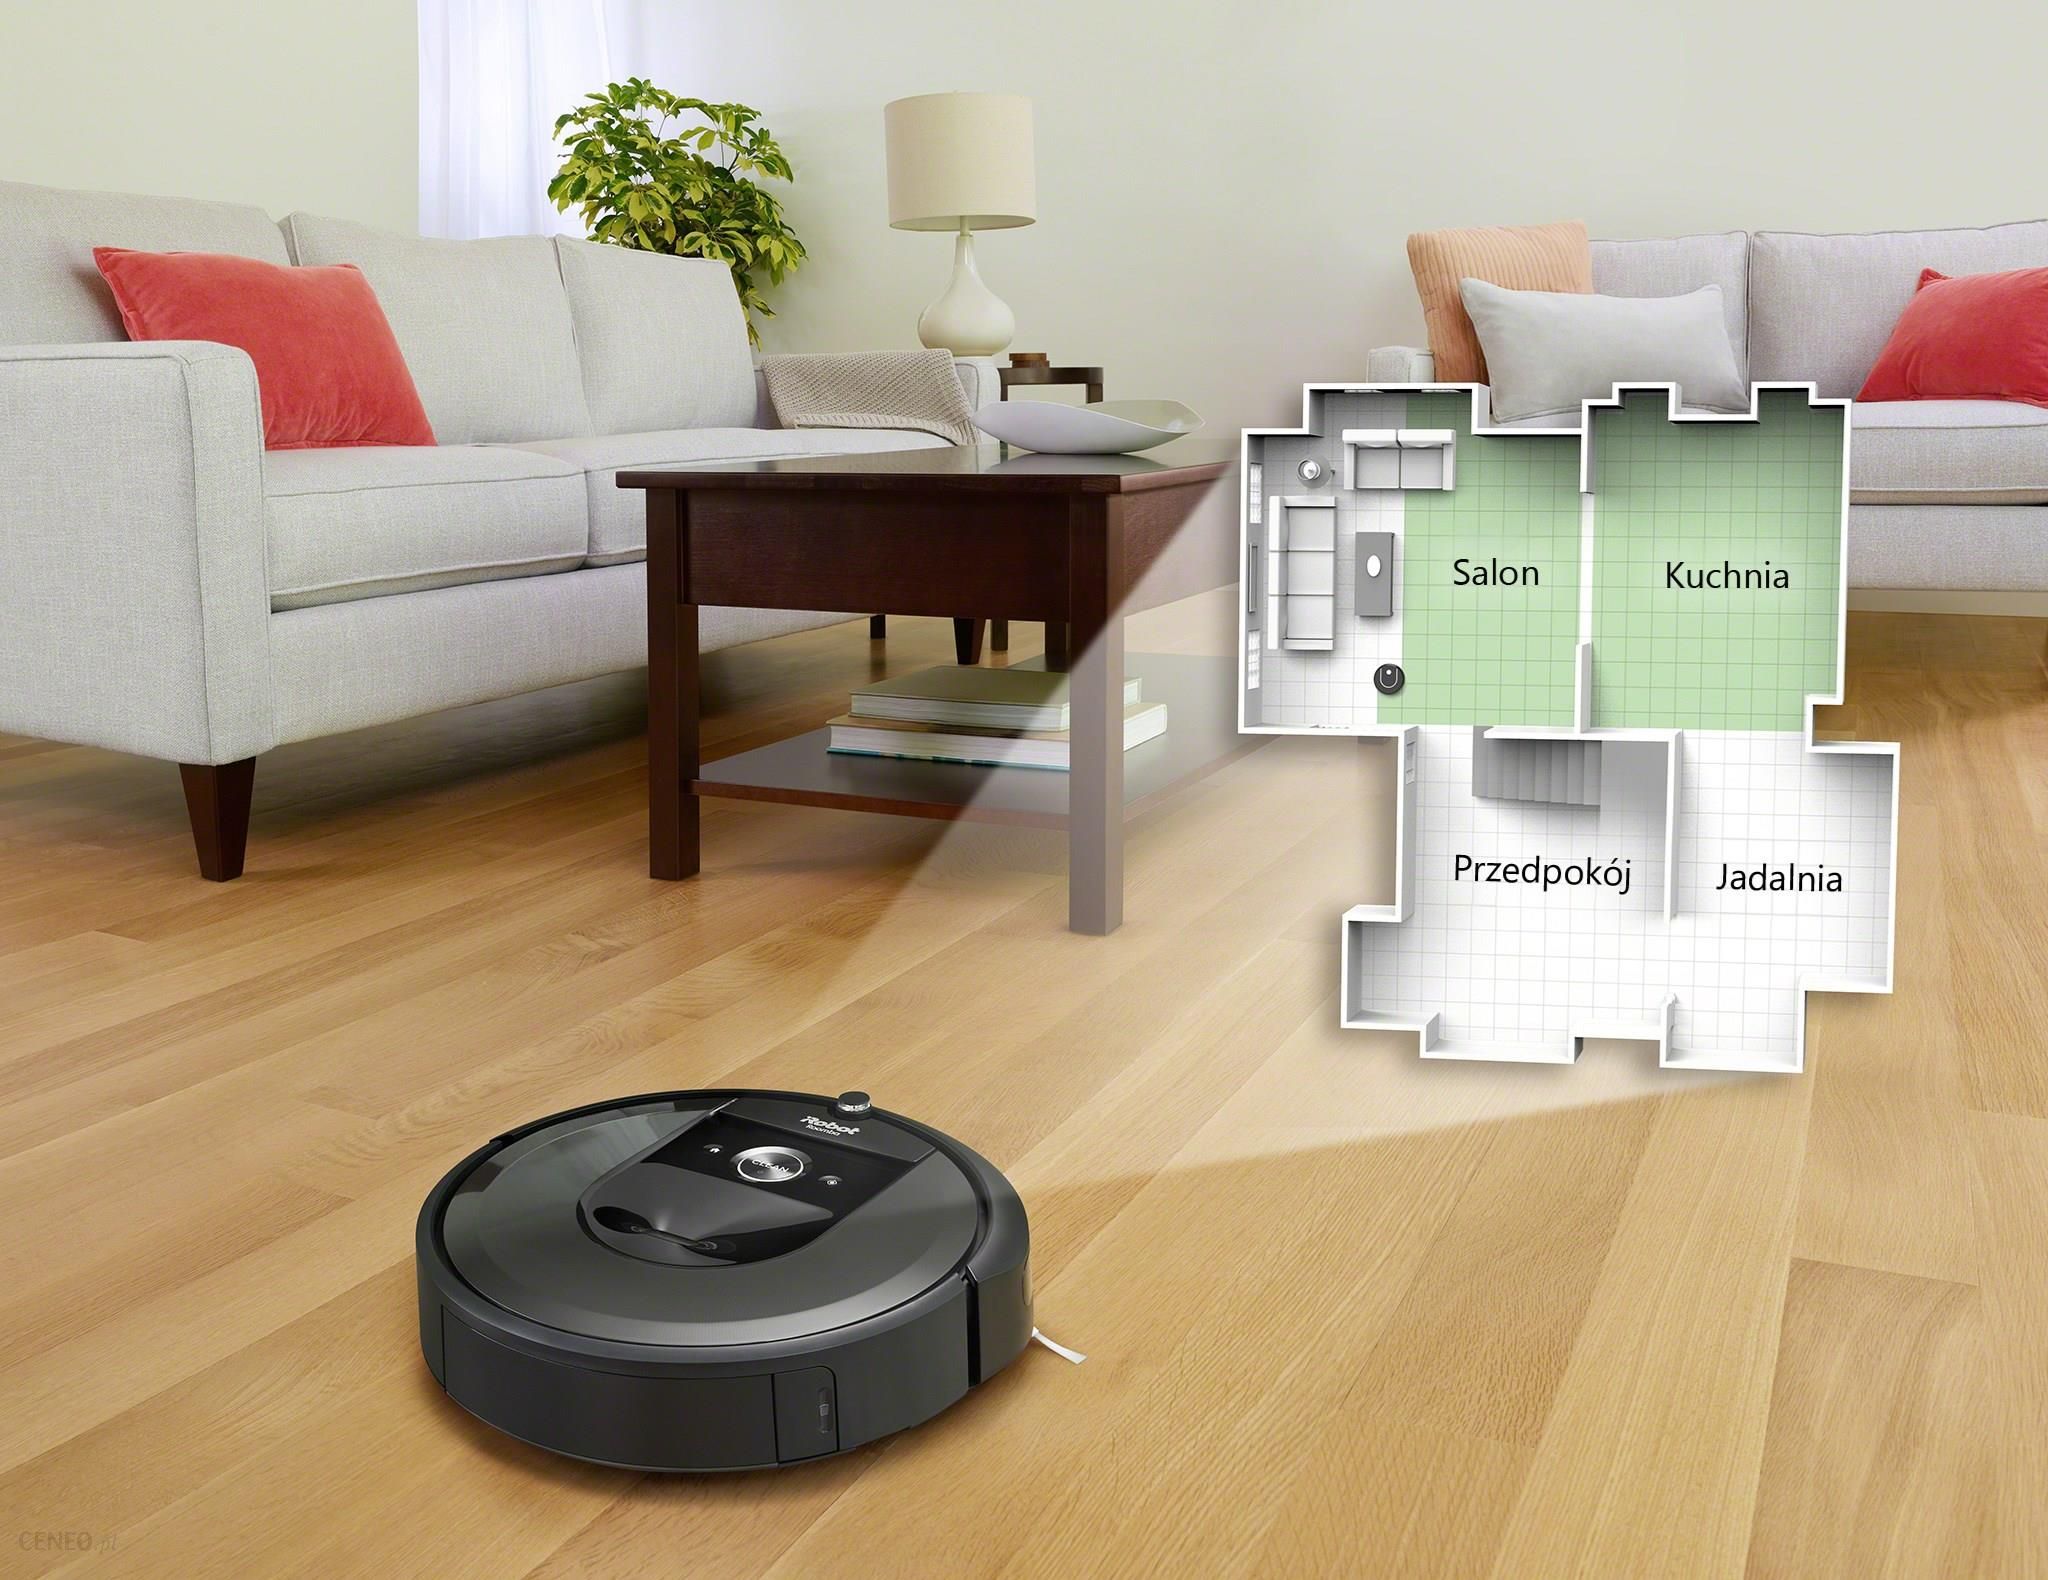 iRobot Roomba i7+ i7558